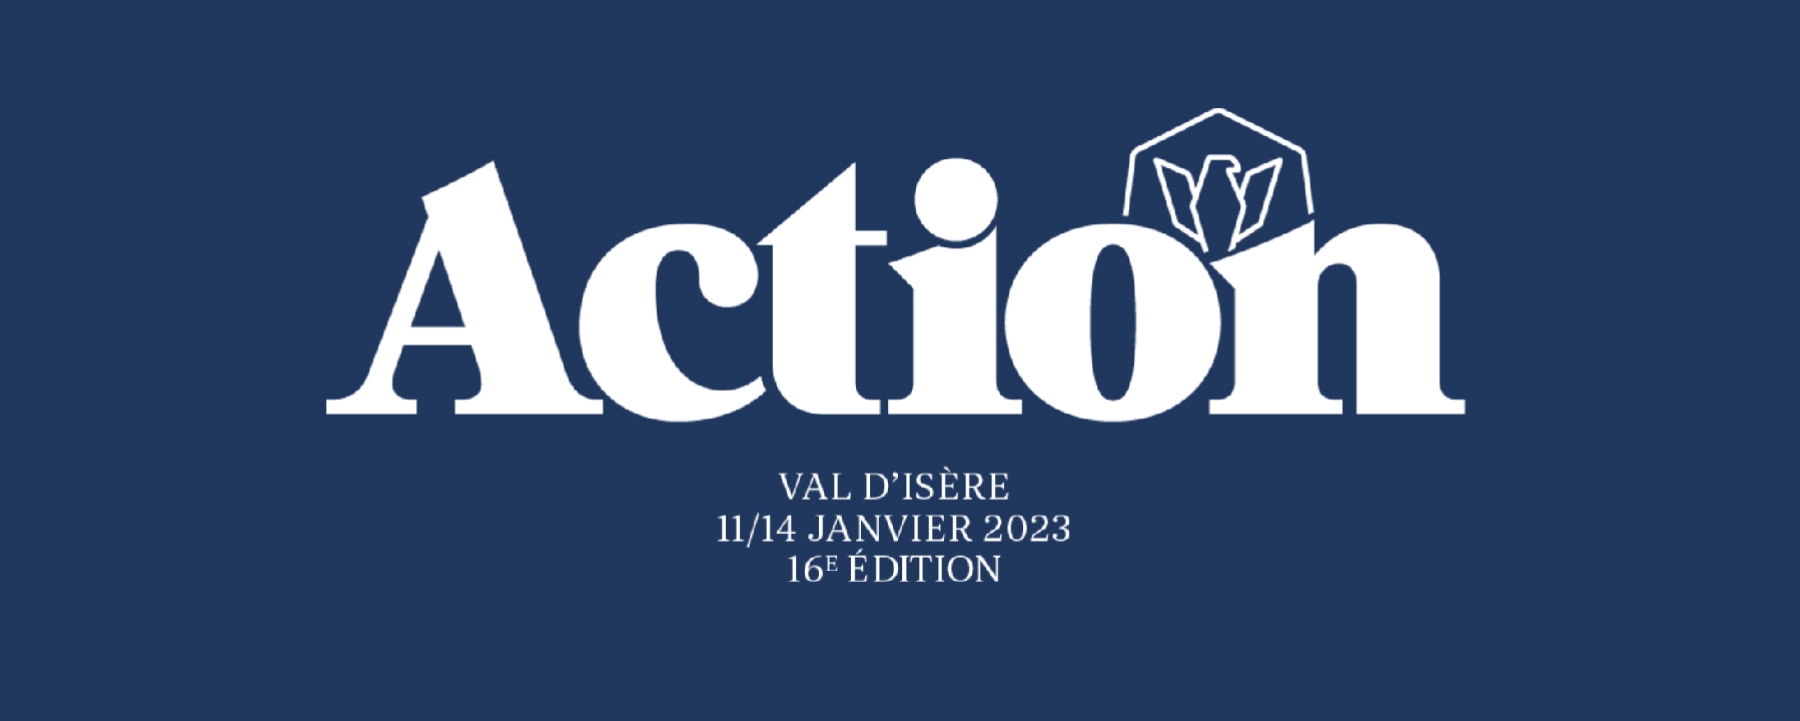 Les Napoléons - Sommet Val d'Isère 2023